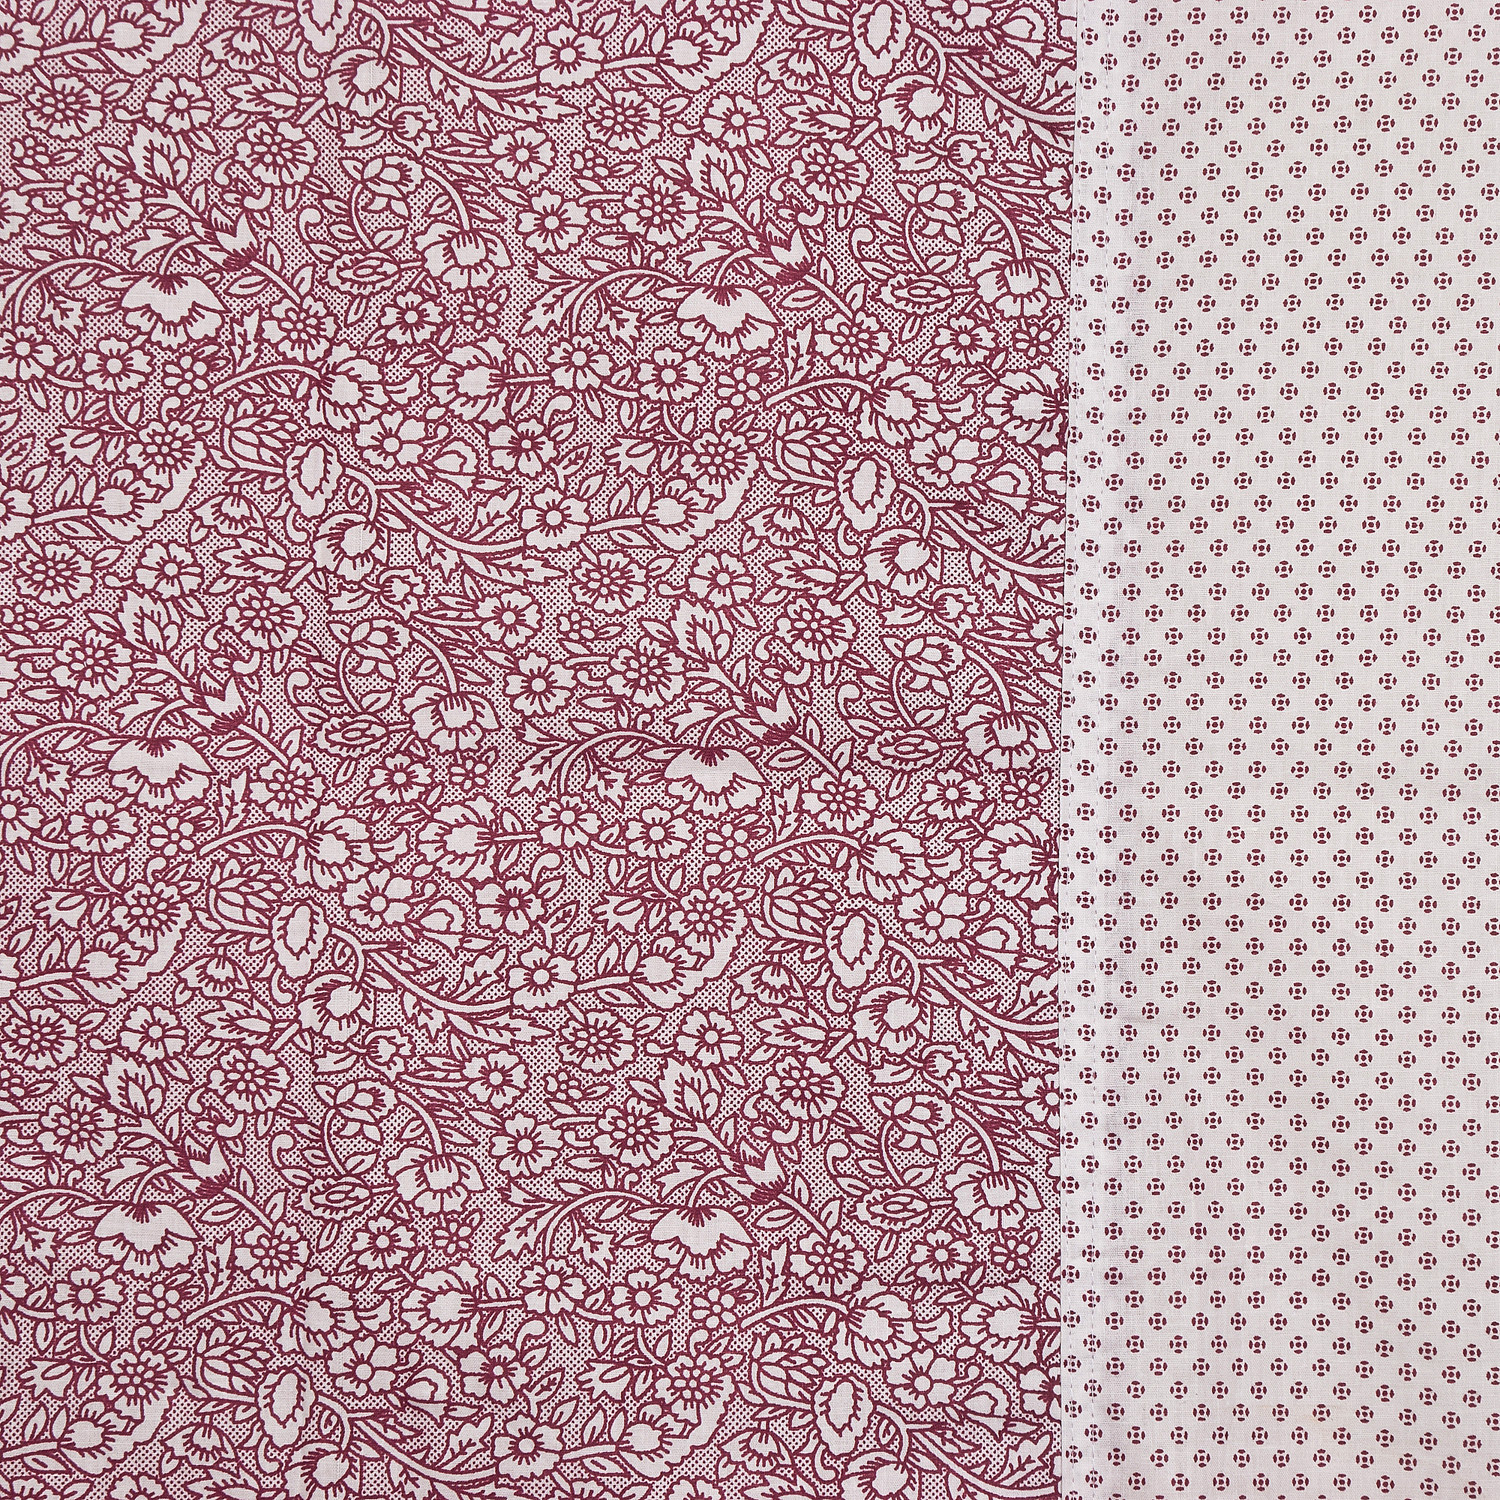 Kuber Industries Flower Design Cotton Diwan Set With 8 Pieces (Pink)-HS_38_KUBMART21137